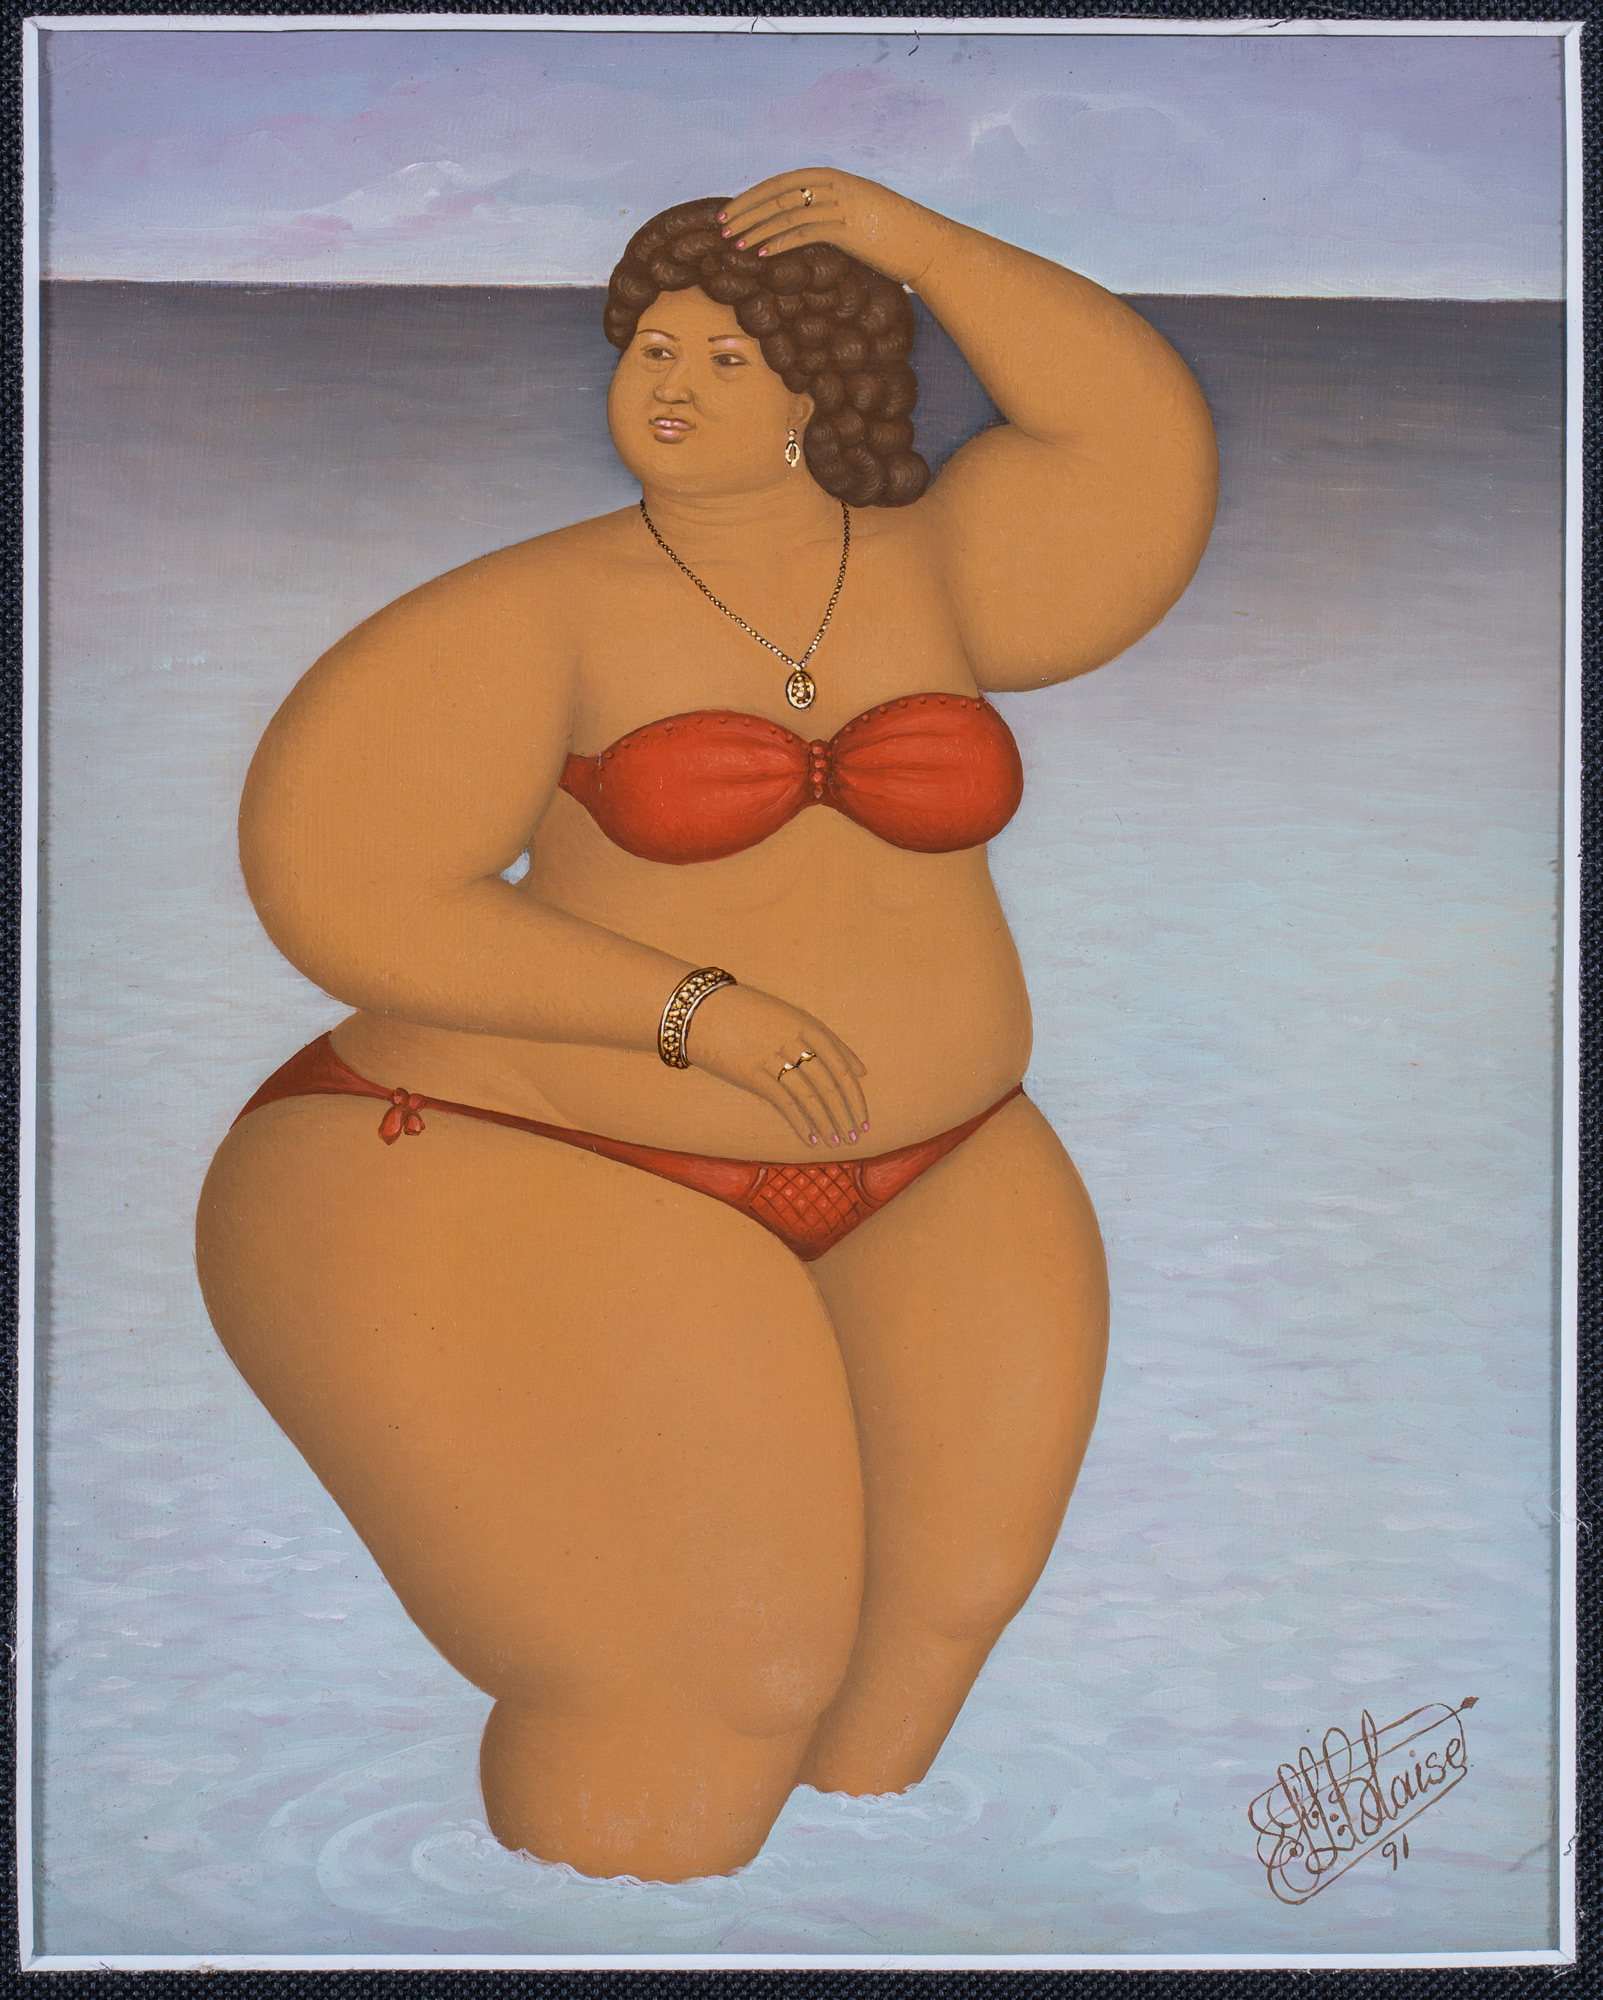 Woman in bikini, 1991